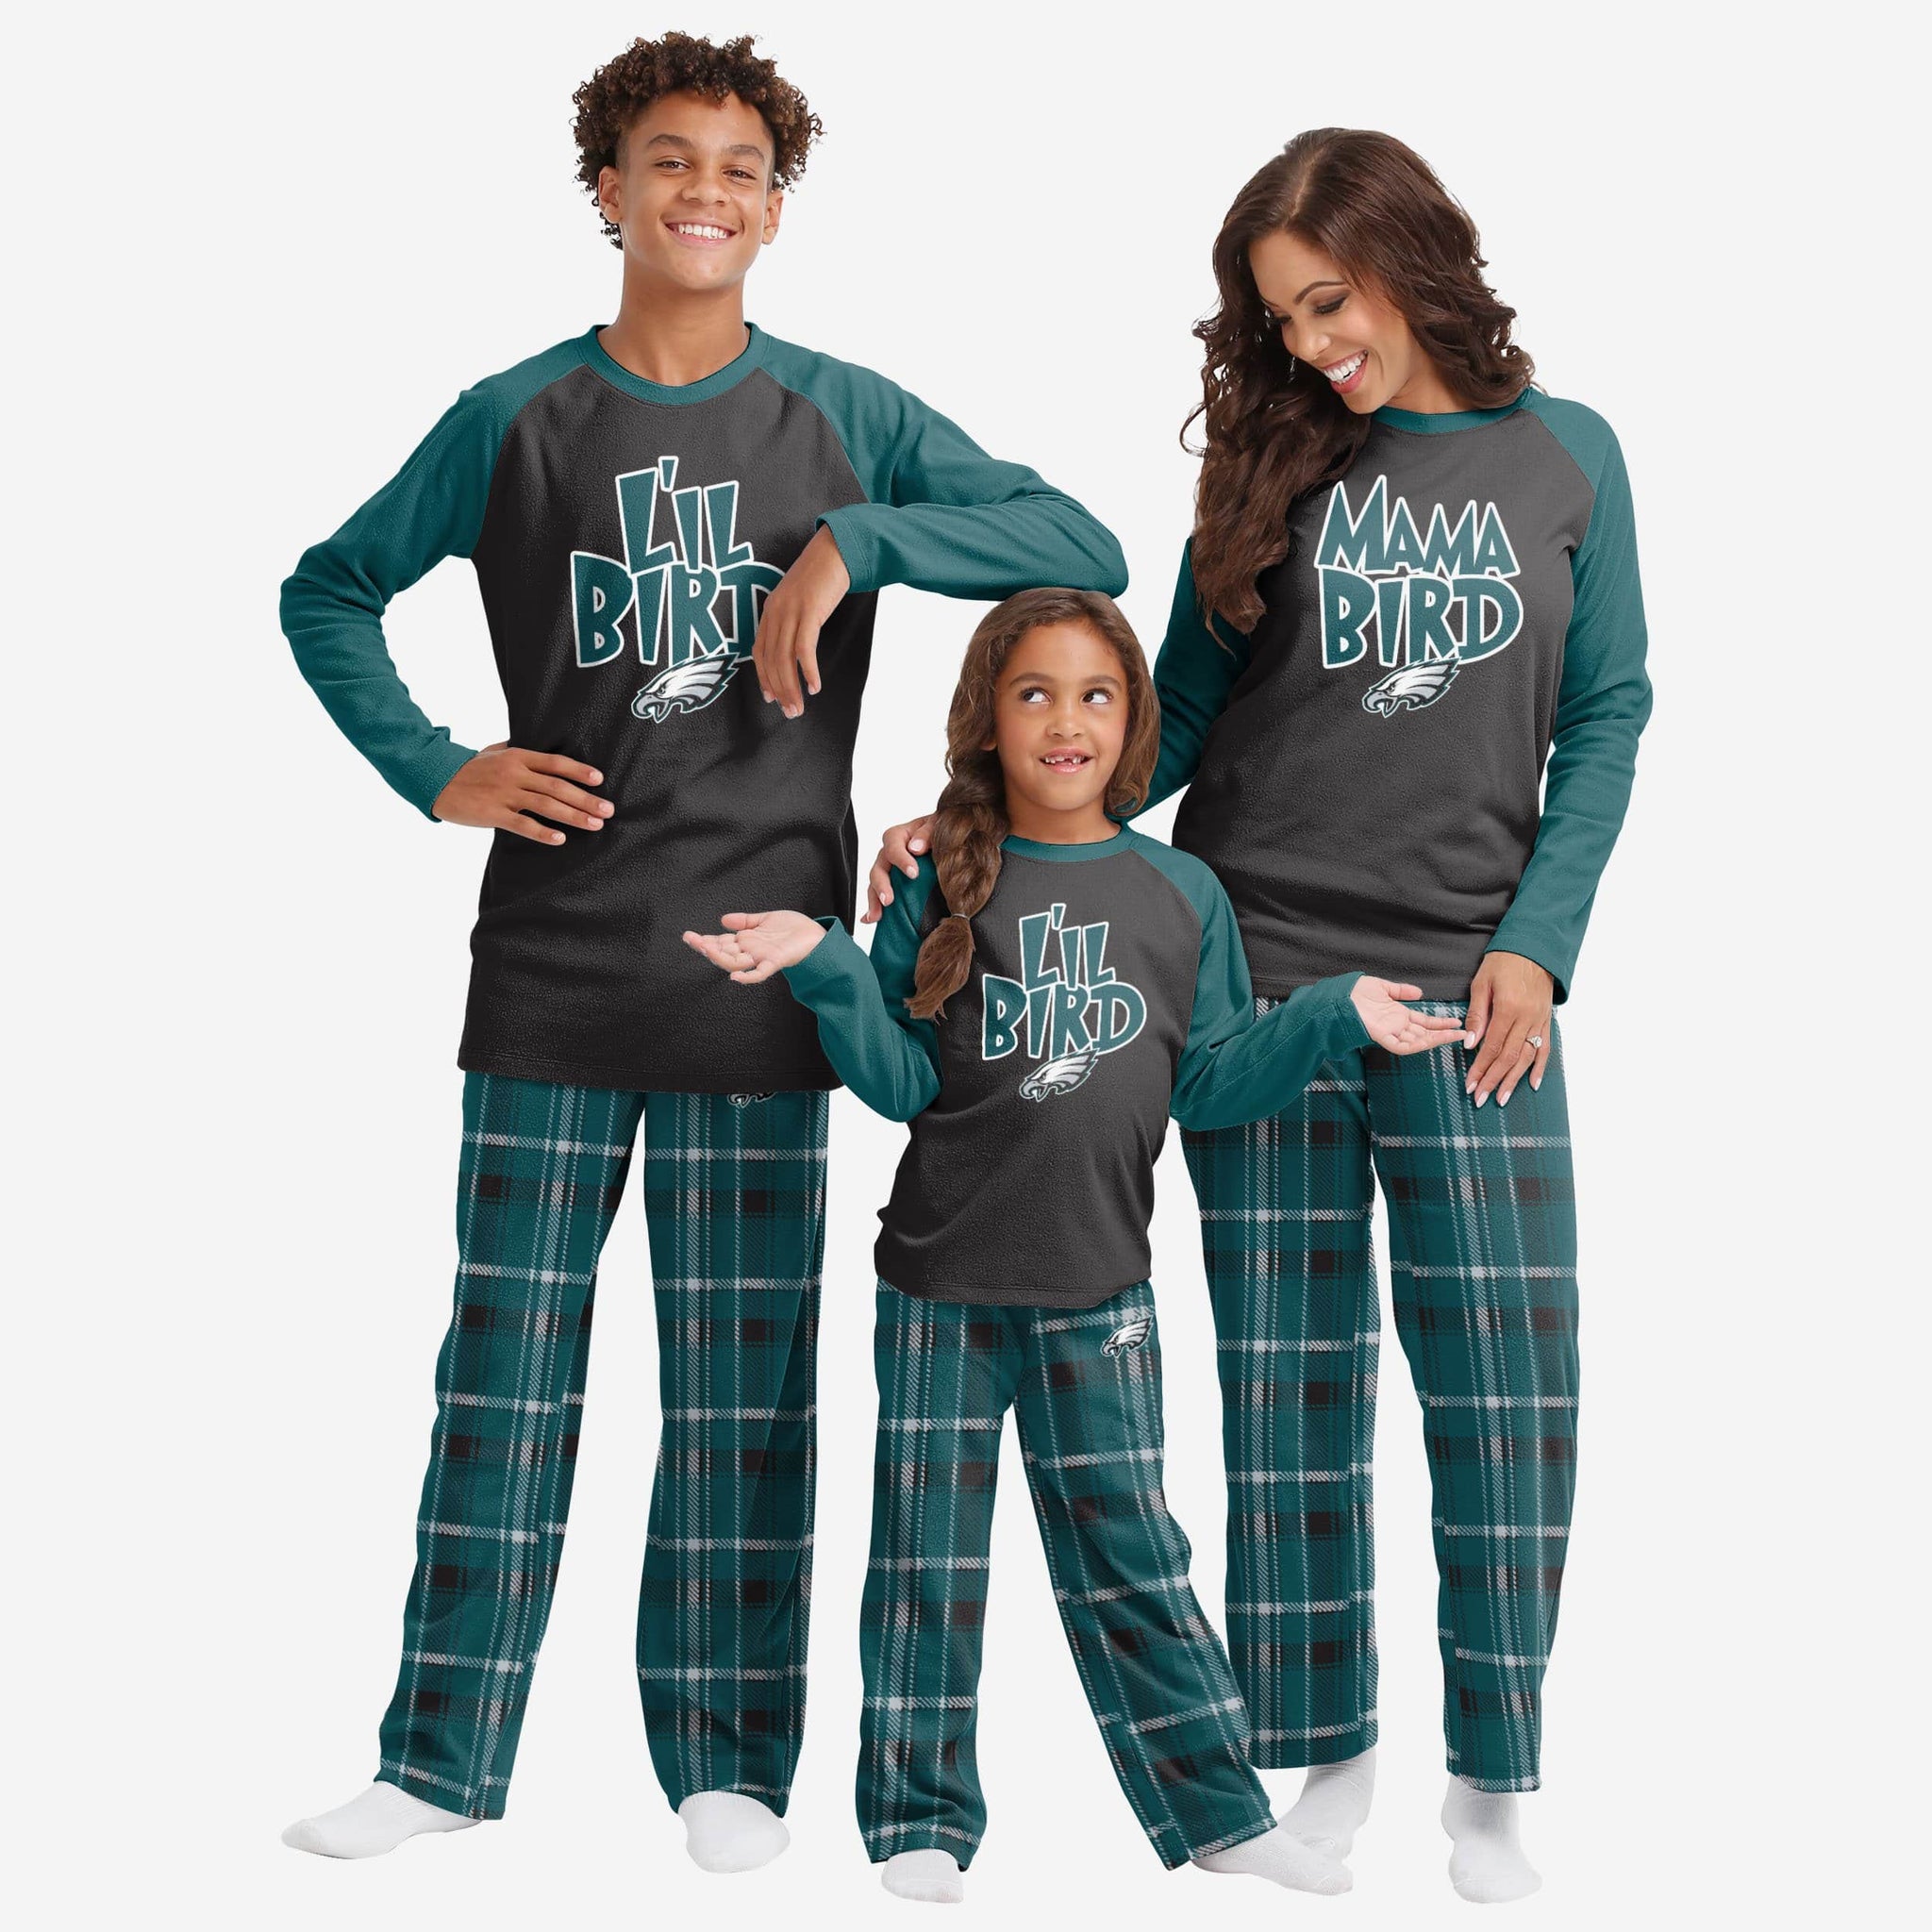 Washington Capitals NHL Family Holiday Pajamas